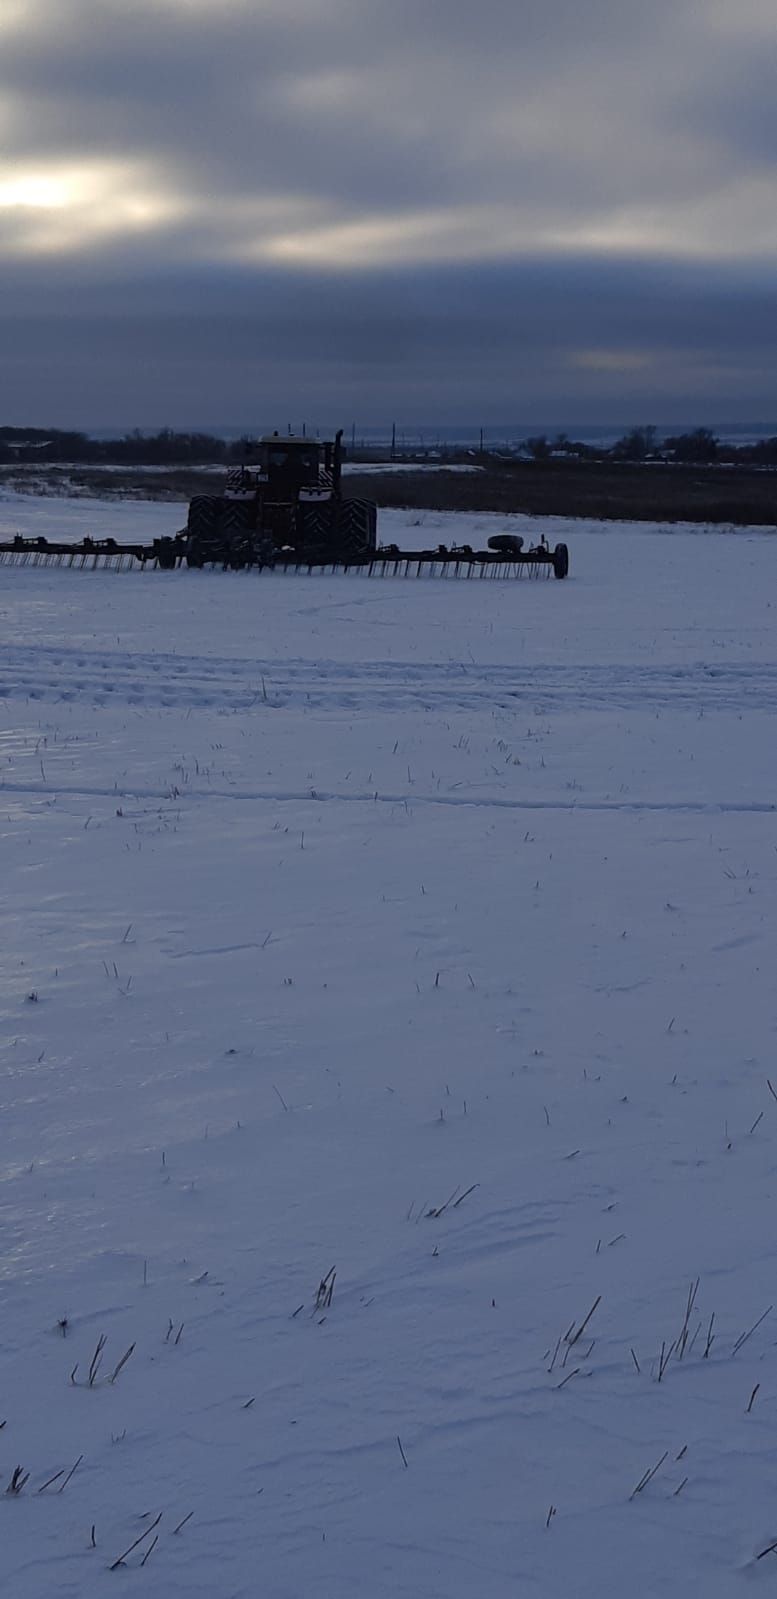 В сельхозпредприятиях Черемшанского района трактора ломают лед